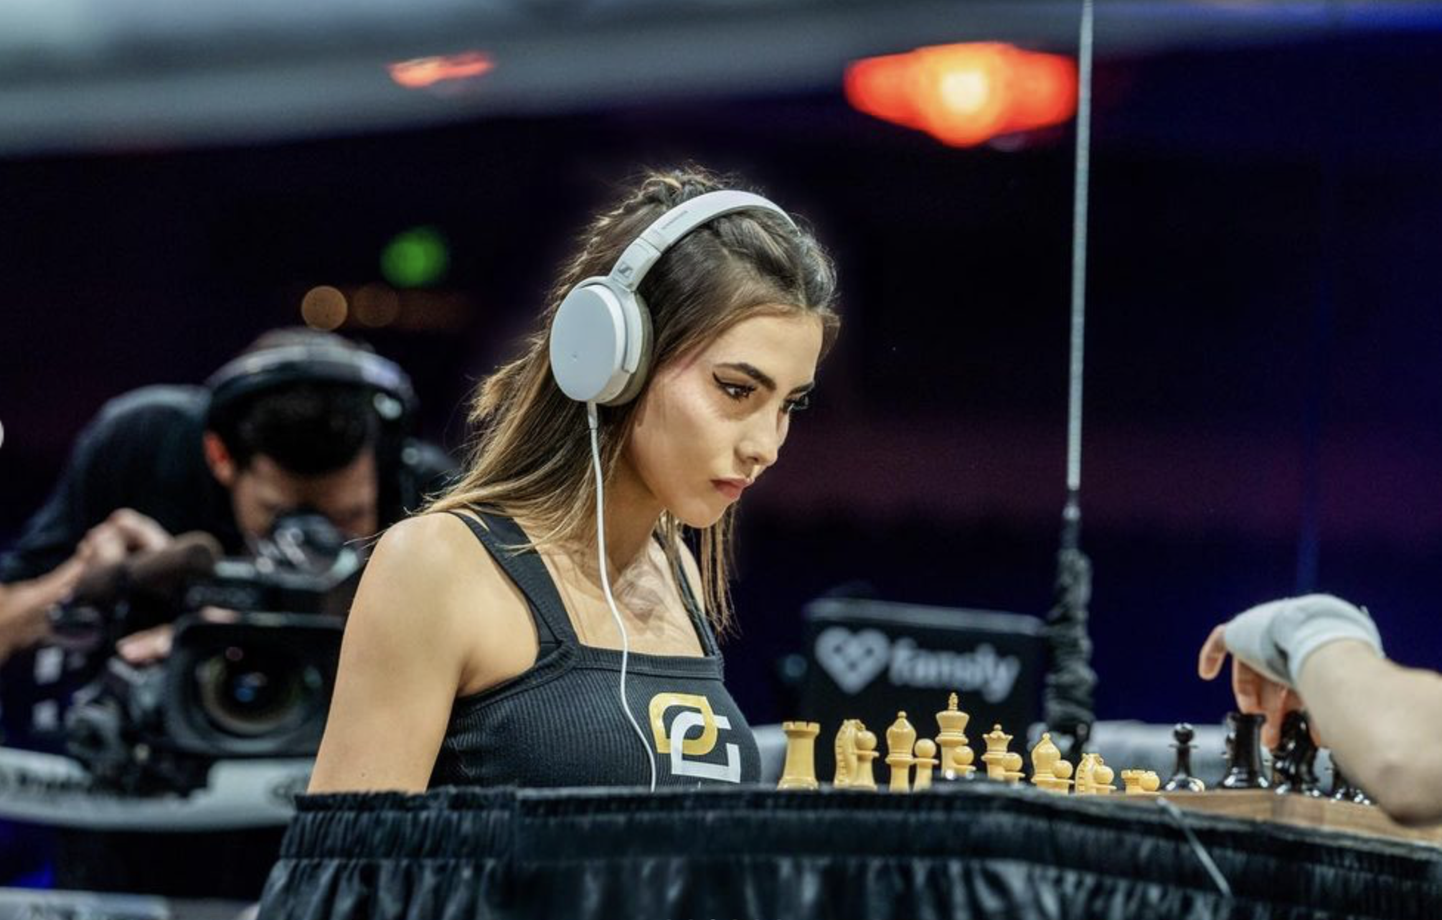 20-aastane maletajast juutuuber Andrea Botez oli Los Angeleses toimunud malepoksi võistluse üheks tõmbenumbriks. Kuigi poksiringis oli Botez parem, siis malelaual tuli tal tunnistada venelanna Dina Belenkaja paremust.